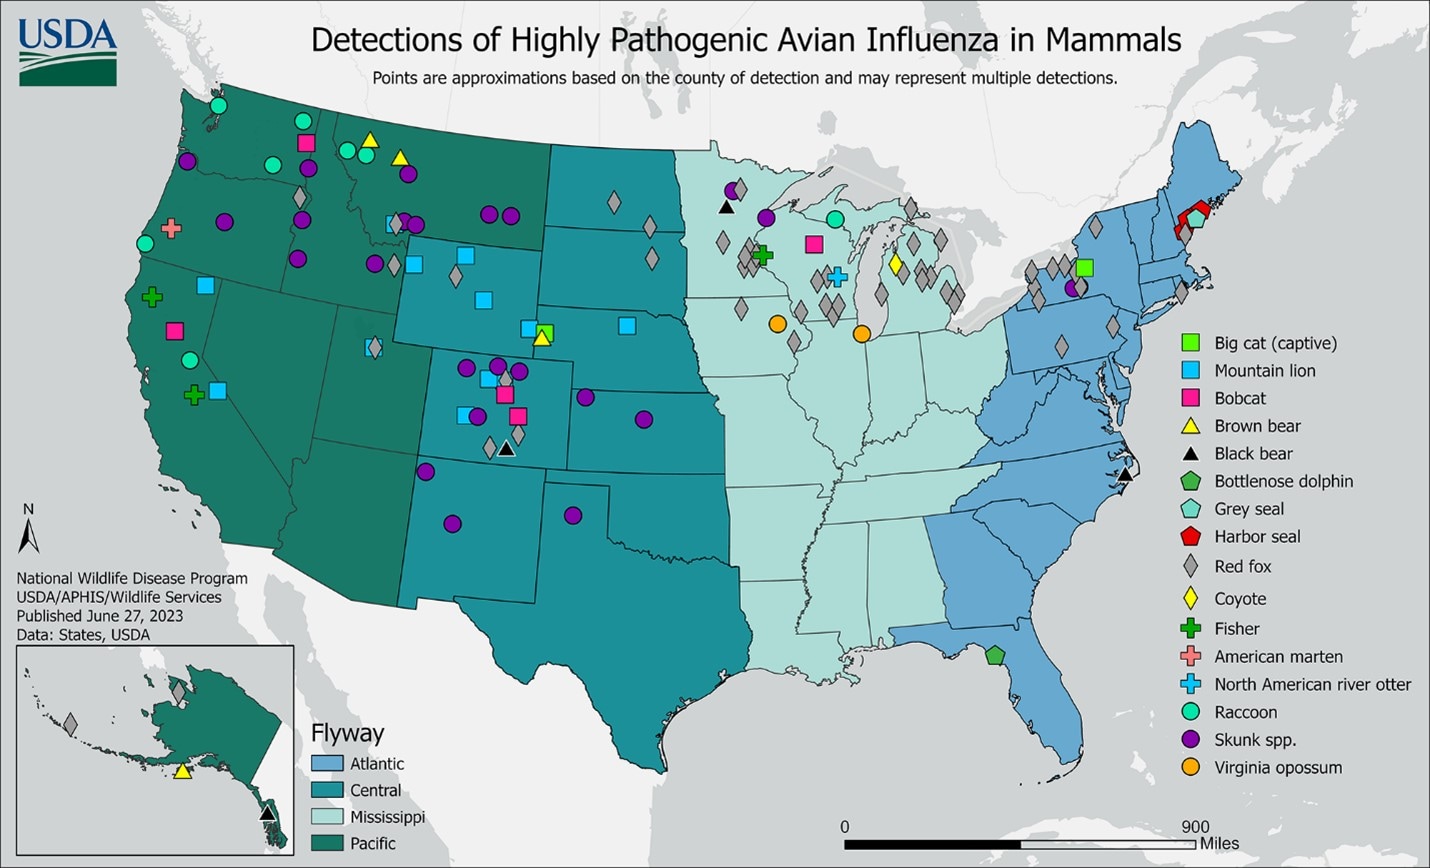 mapa de Detección de la forma altamente patógena de la influenza aviar en mamíferos en los Estados Unidos con puntos de diferentes colores para los diferentes mamíferos